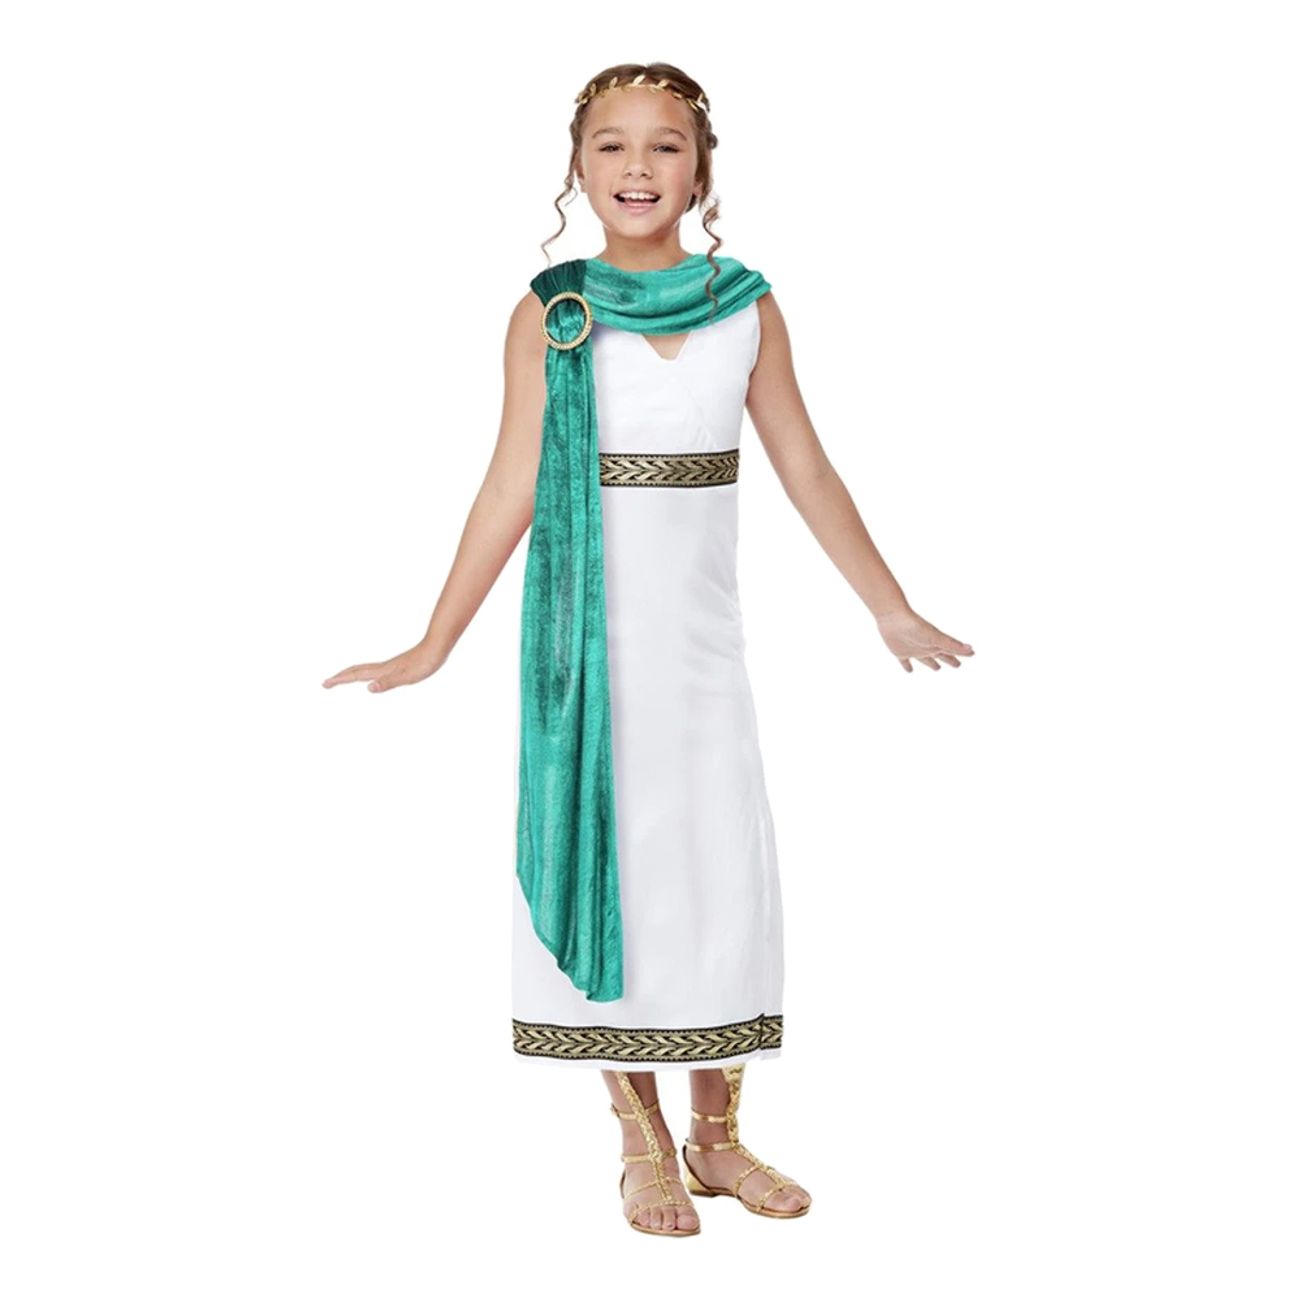 romersk-kejsarinna-barn-maskeraddrakt-78870-1